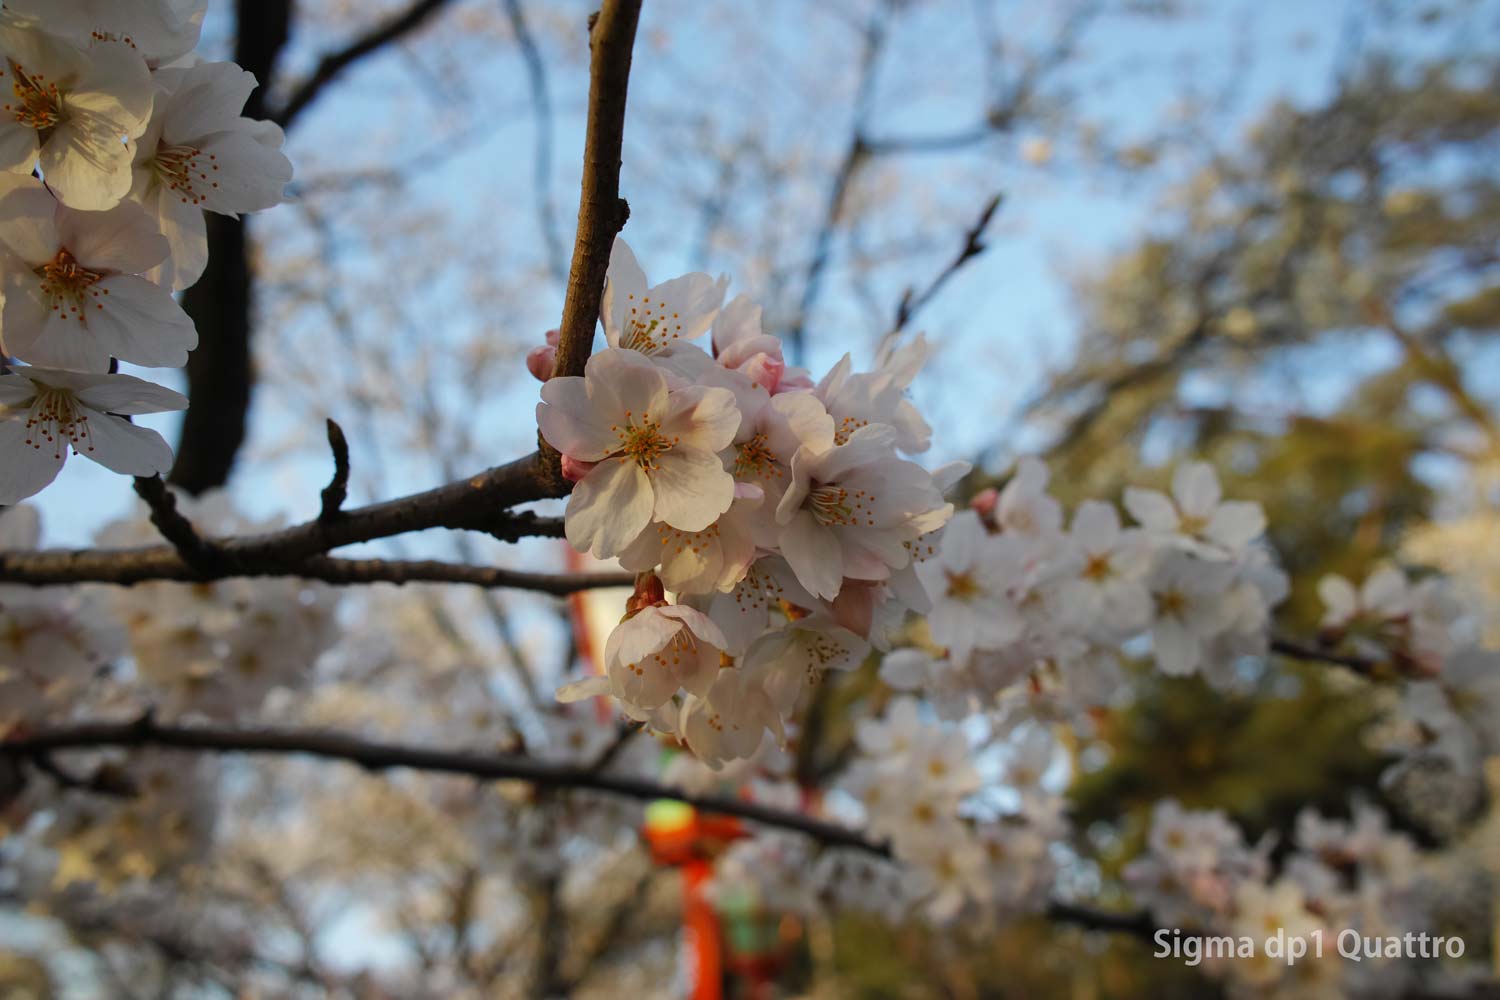 SIGMA dp1 Quattoro 桜